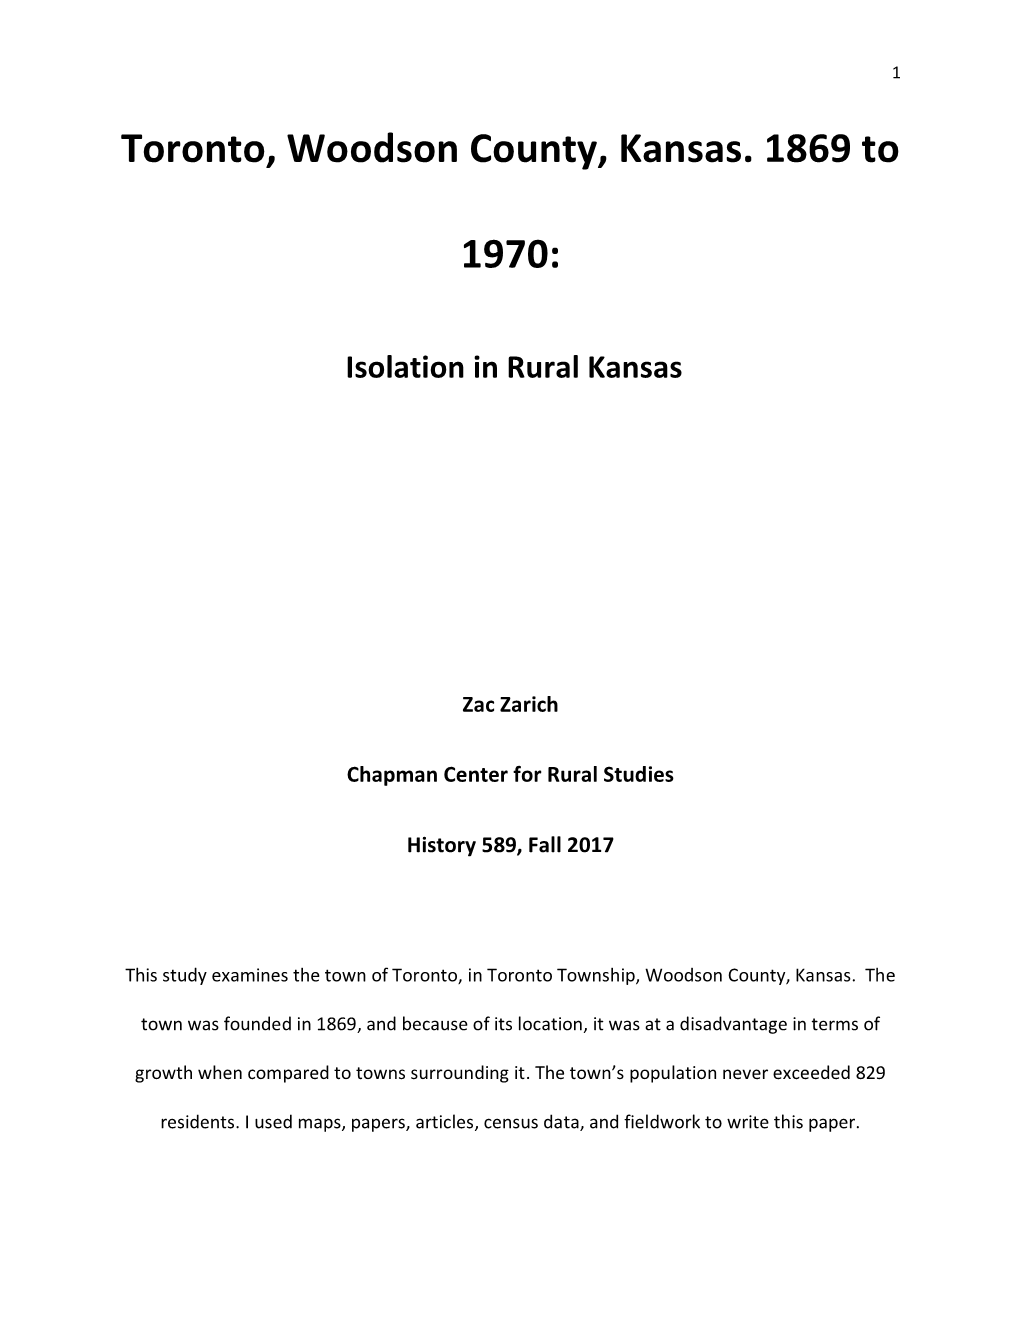 Toronto, Woodson County, Kansas. 1869 to 1970